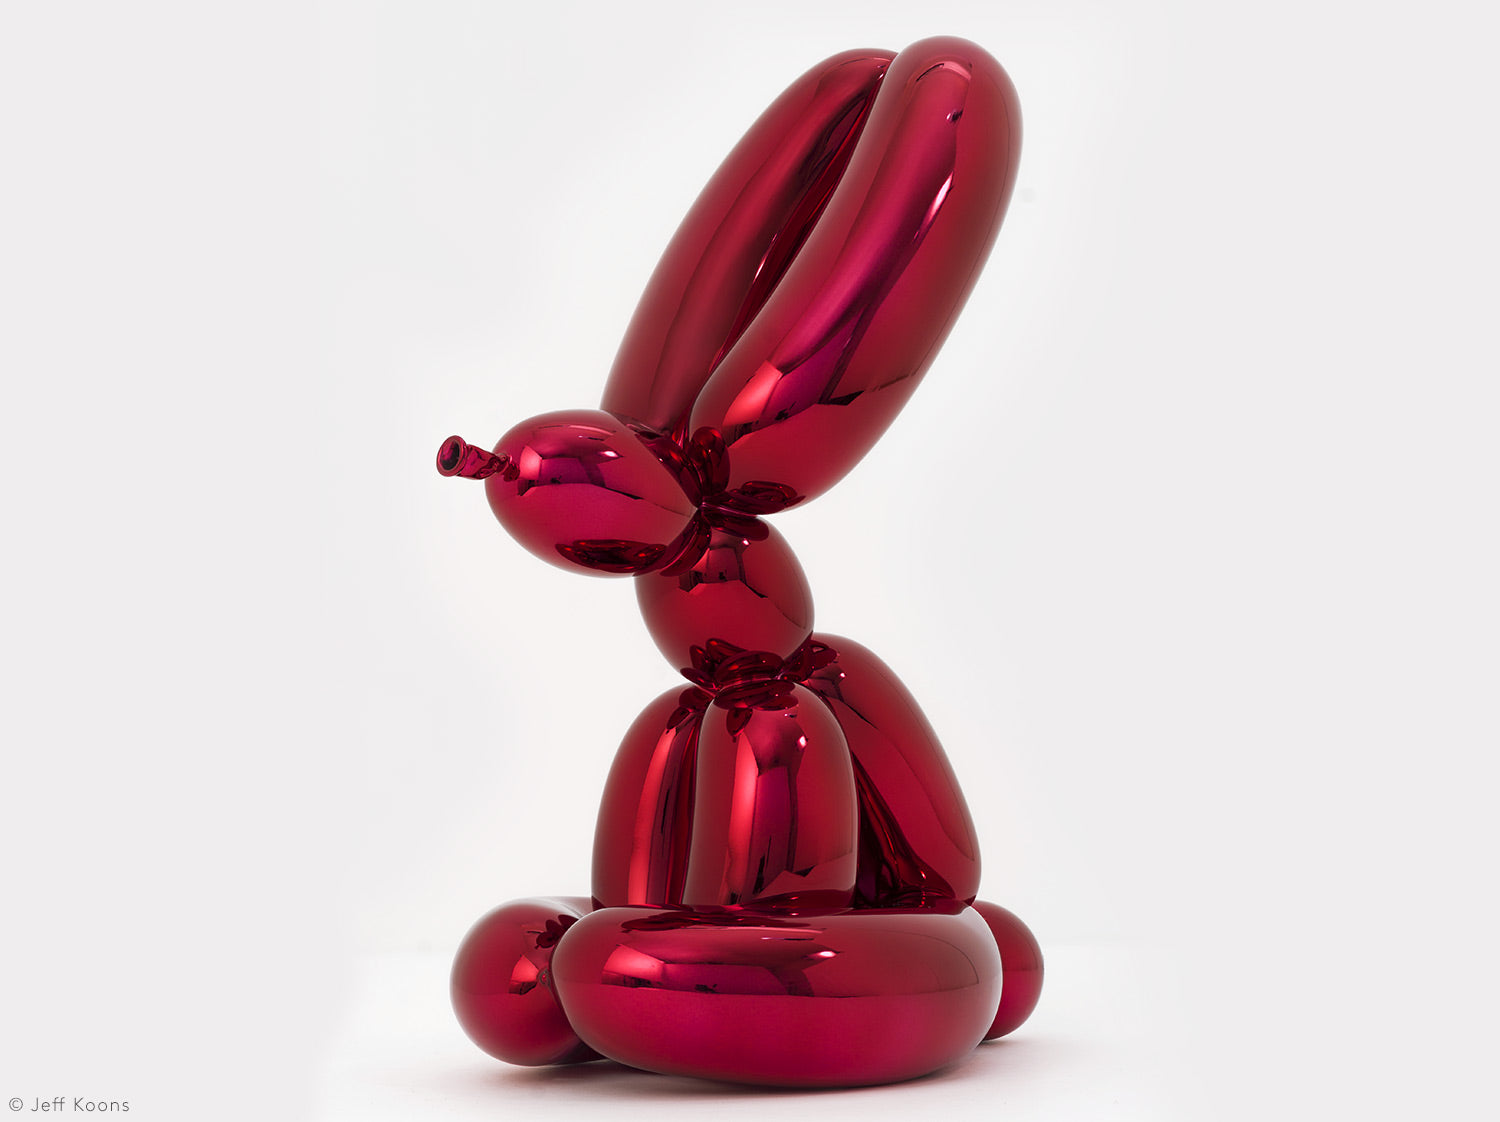 Balloon Rabbit (Red)